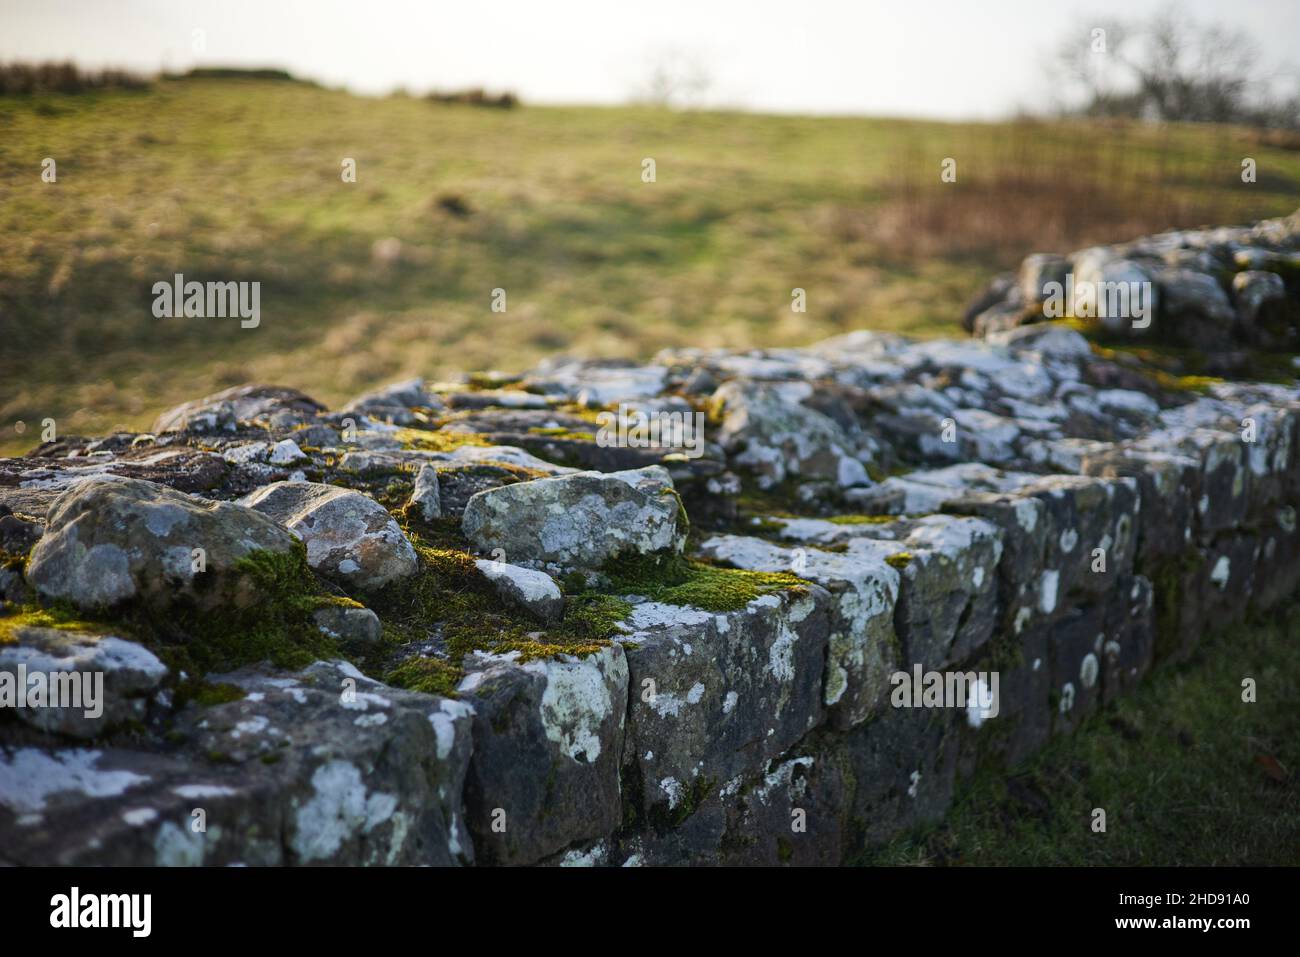 Hadrians Mauer, eine beeindruckende Mauer, die von den Römern über den Gipfel Englands errichtet wurde Stockfoto